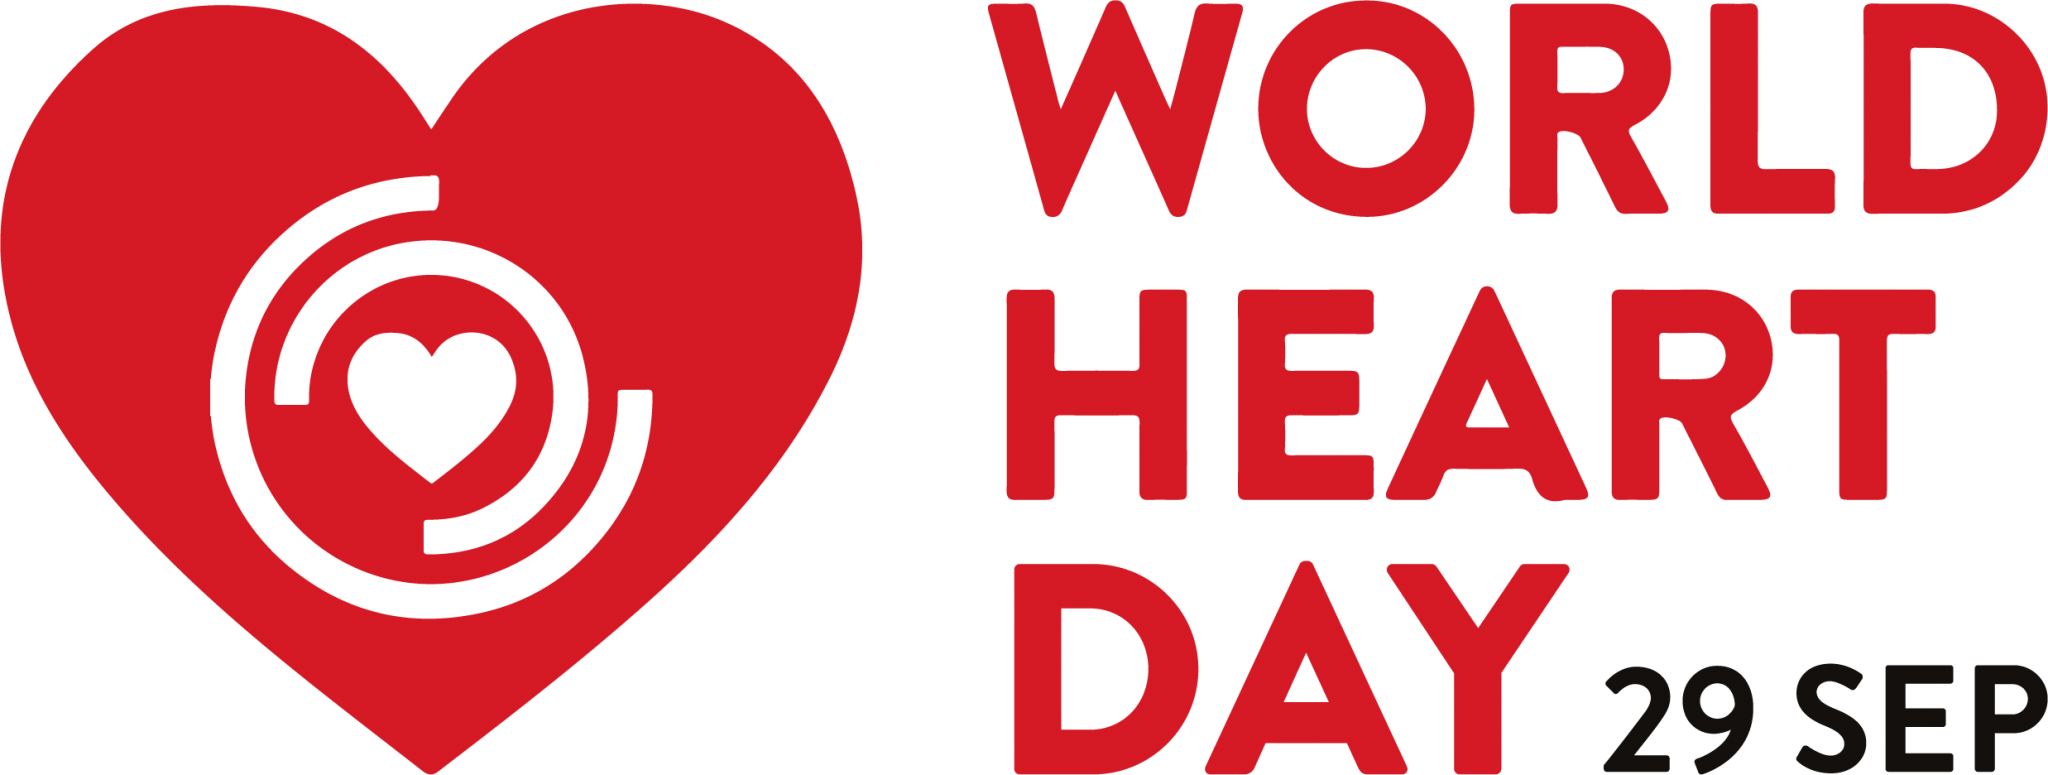 The world is heart. Всемирный день сердца (World Heart Day). Всемирная Федерация сердца. Всемирный день здоровья сердечко. World Heart Federation logo.